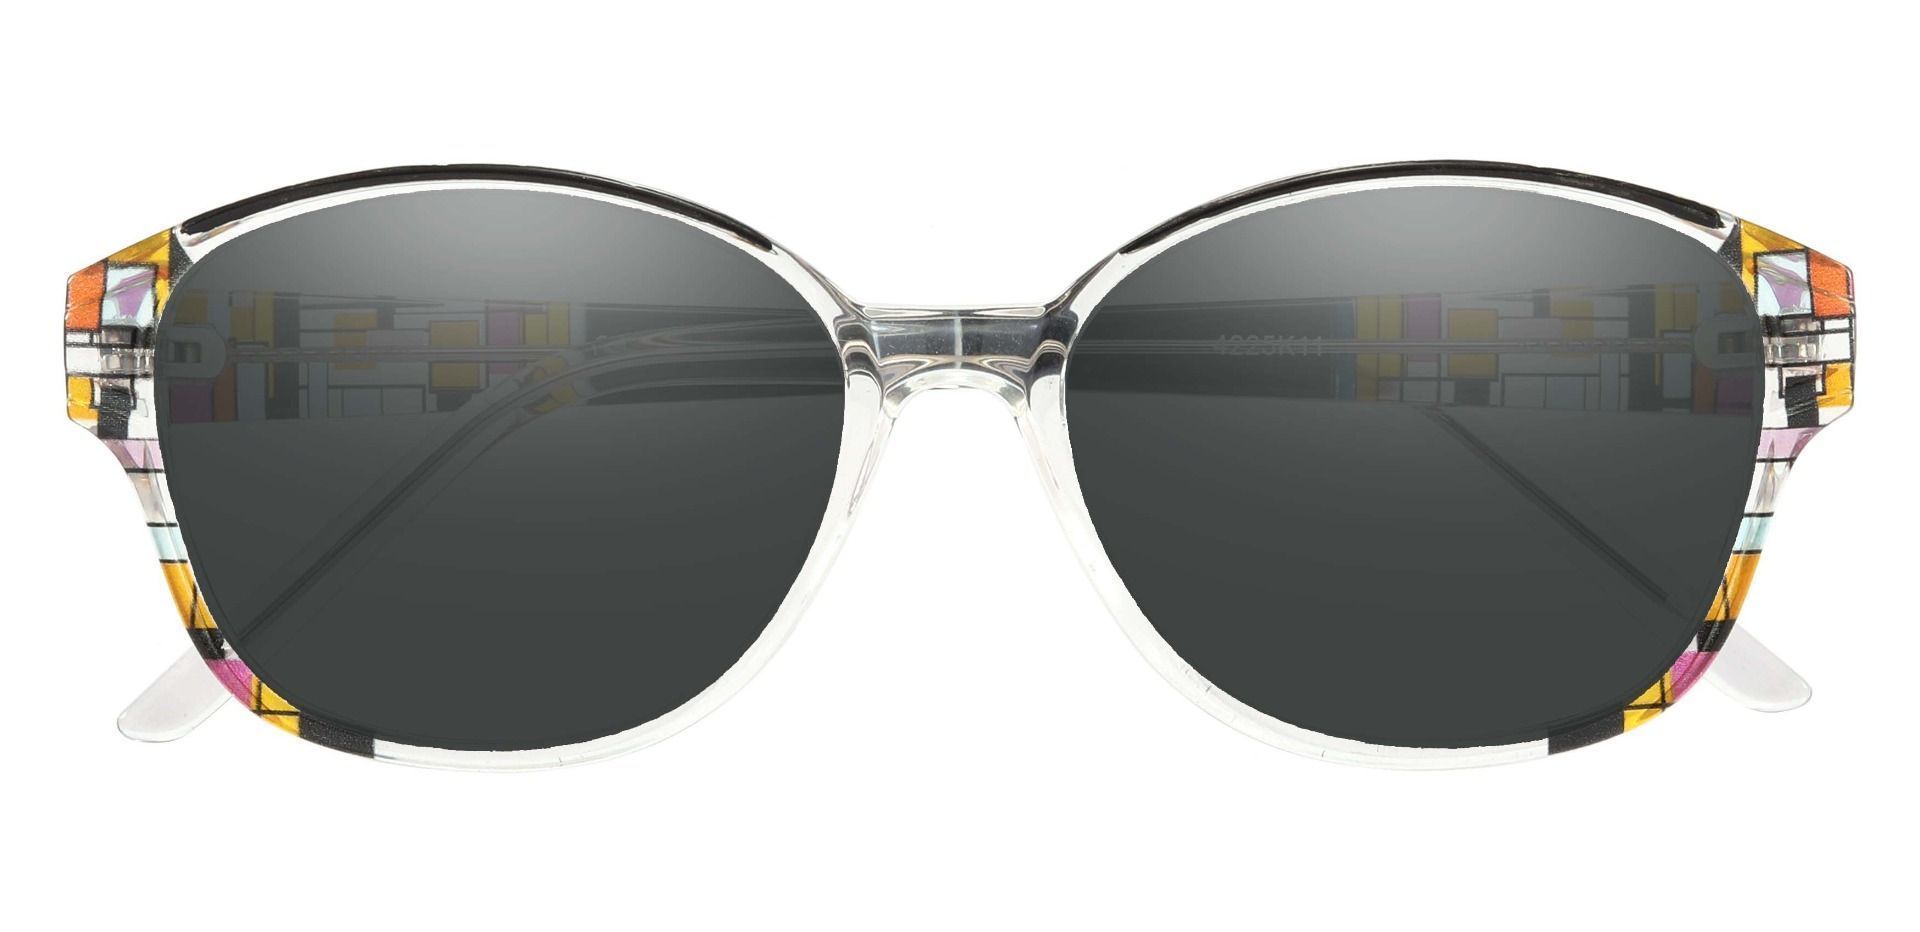 Moira Oval Prescription Sunglasses - Black Frame With Gray Lenses